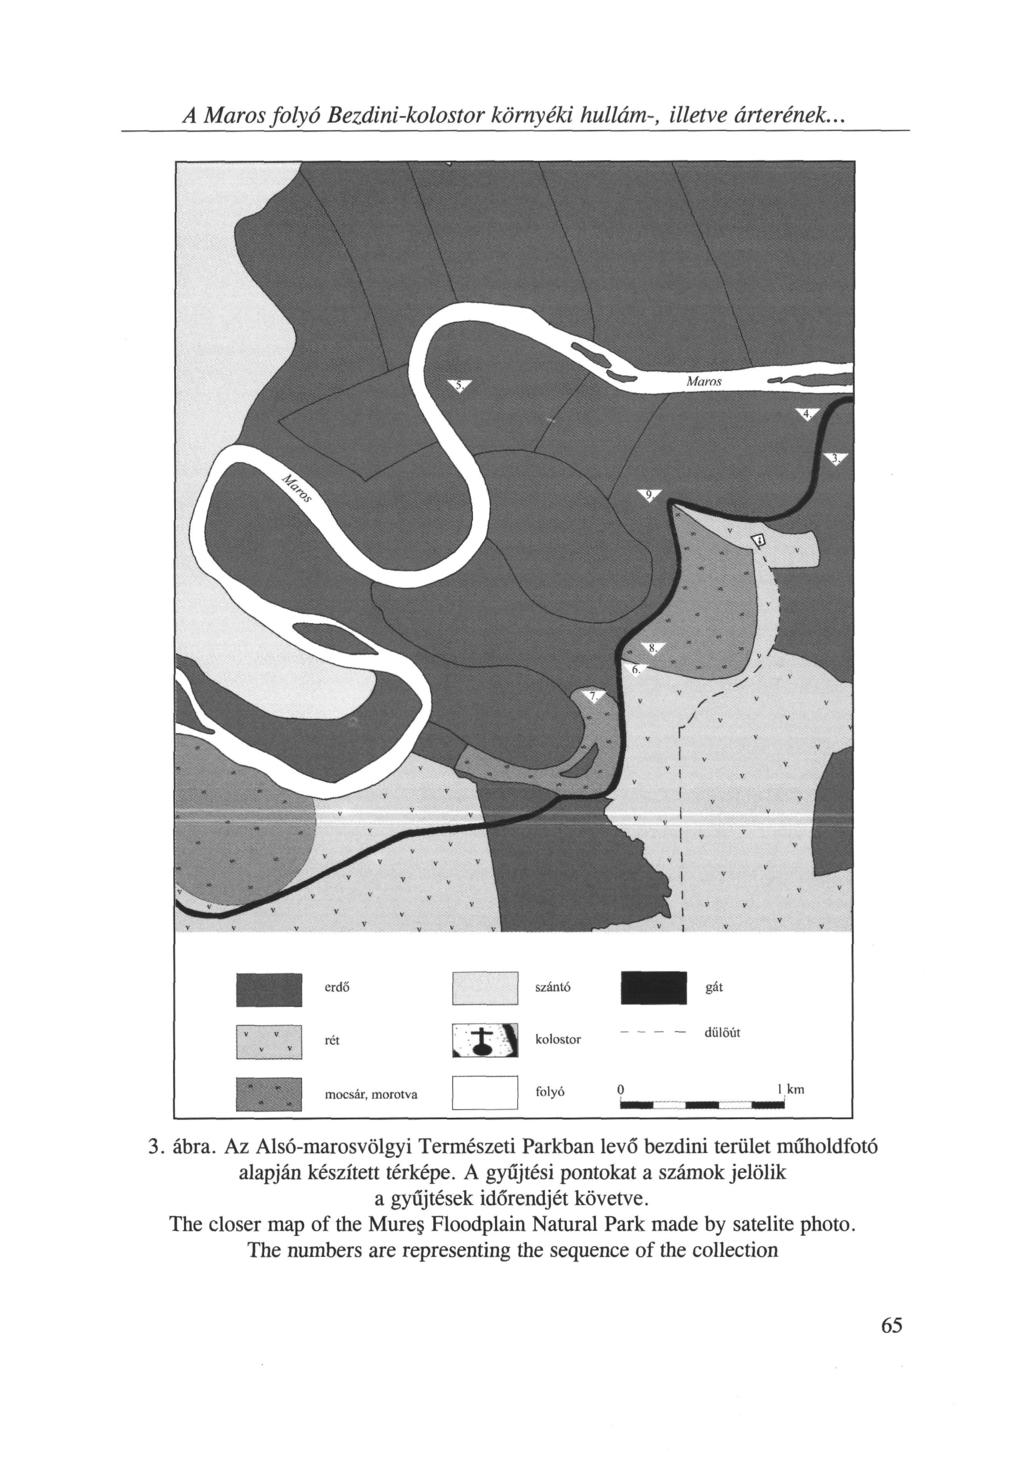 A Maros folyó Bezdini-kolostor környéki hullám-, illetve árterének... 3. ábra. Az Alsó-maros völgyi Természeti Parkban levő bezdini terület műholdfotó alapján készített térképe.